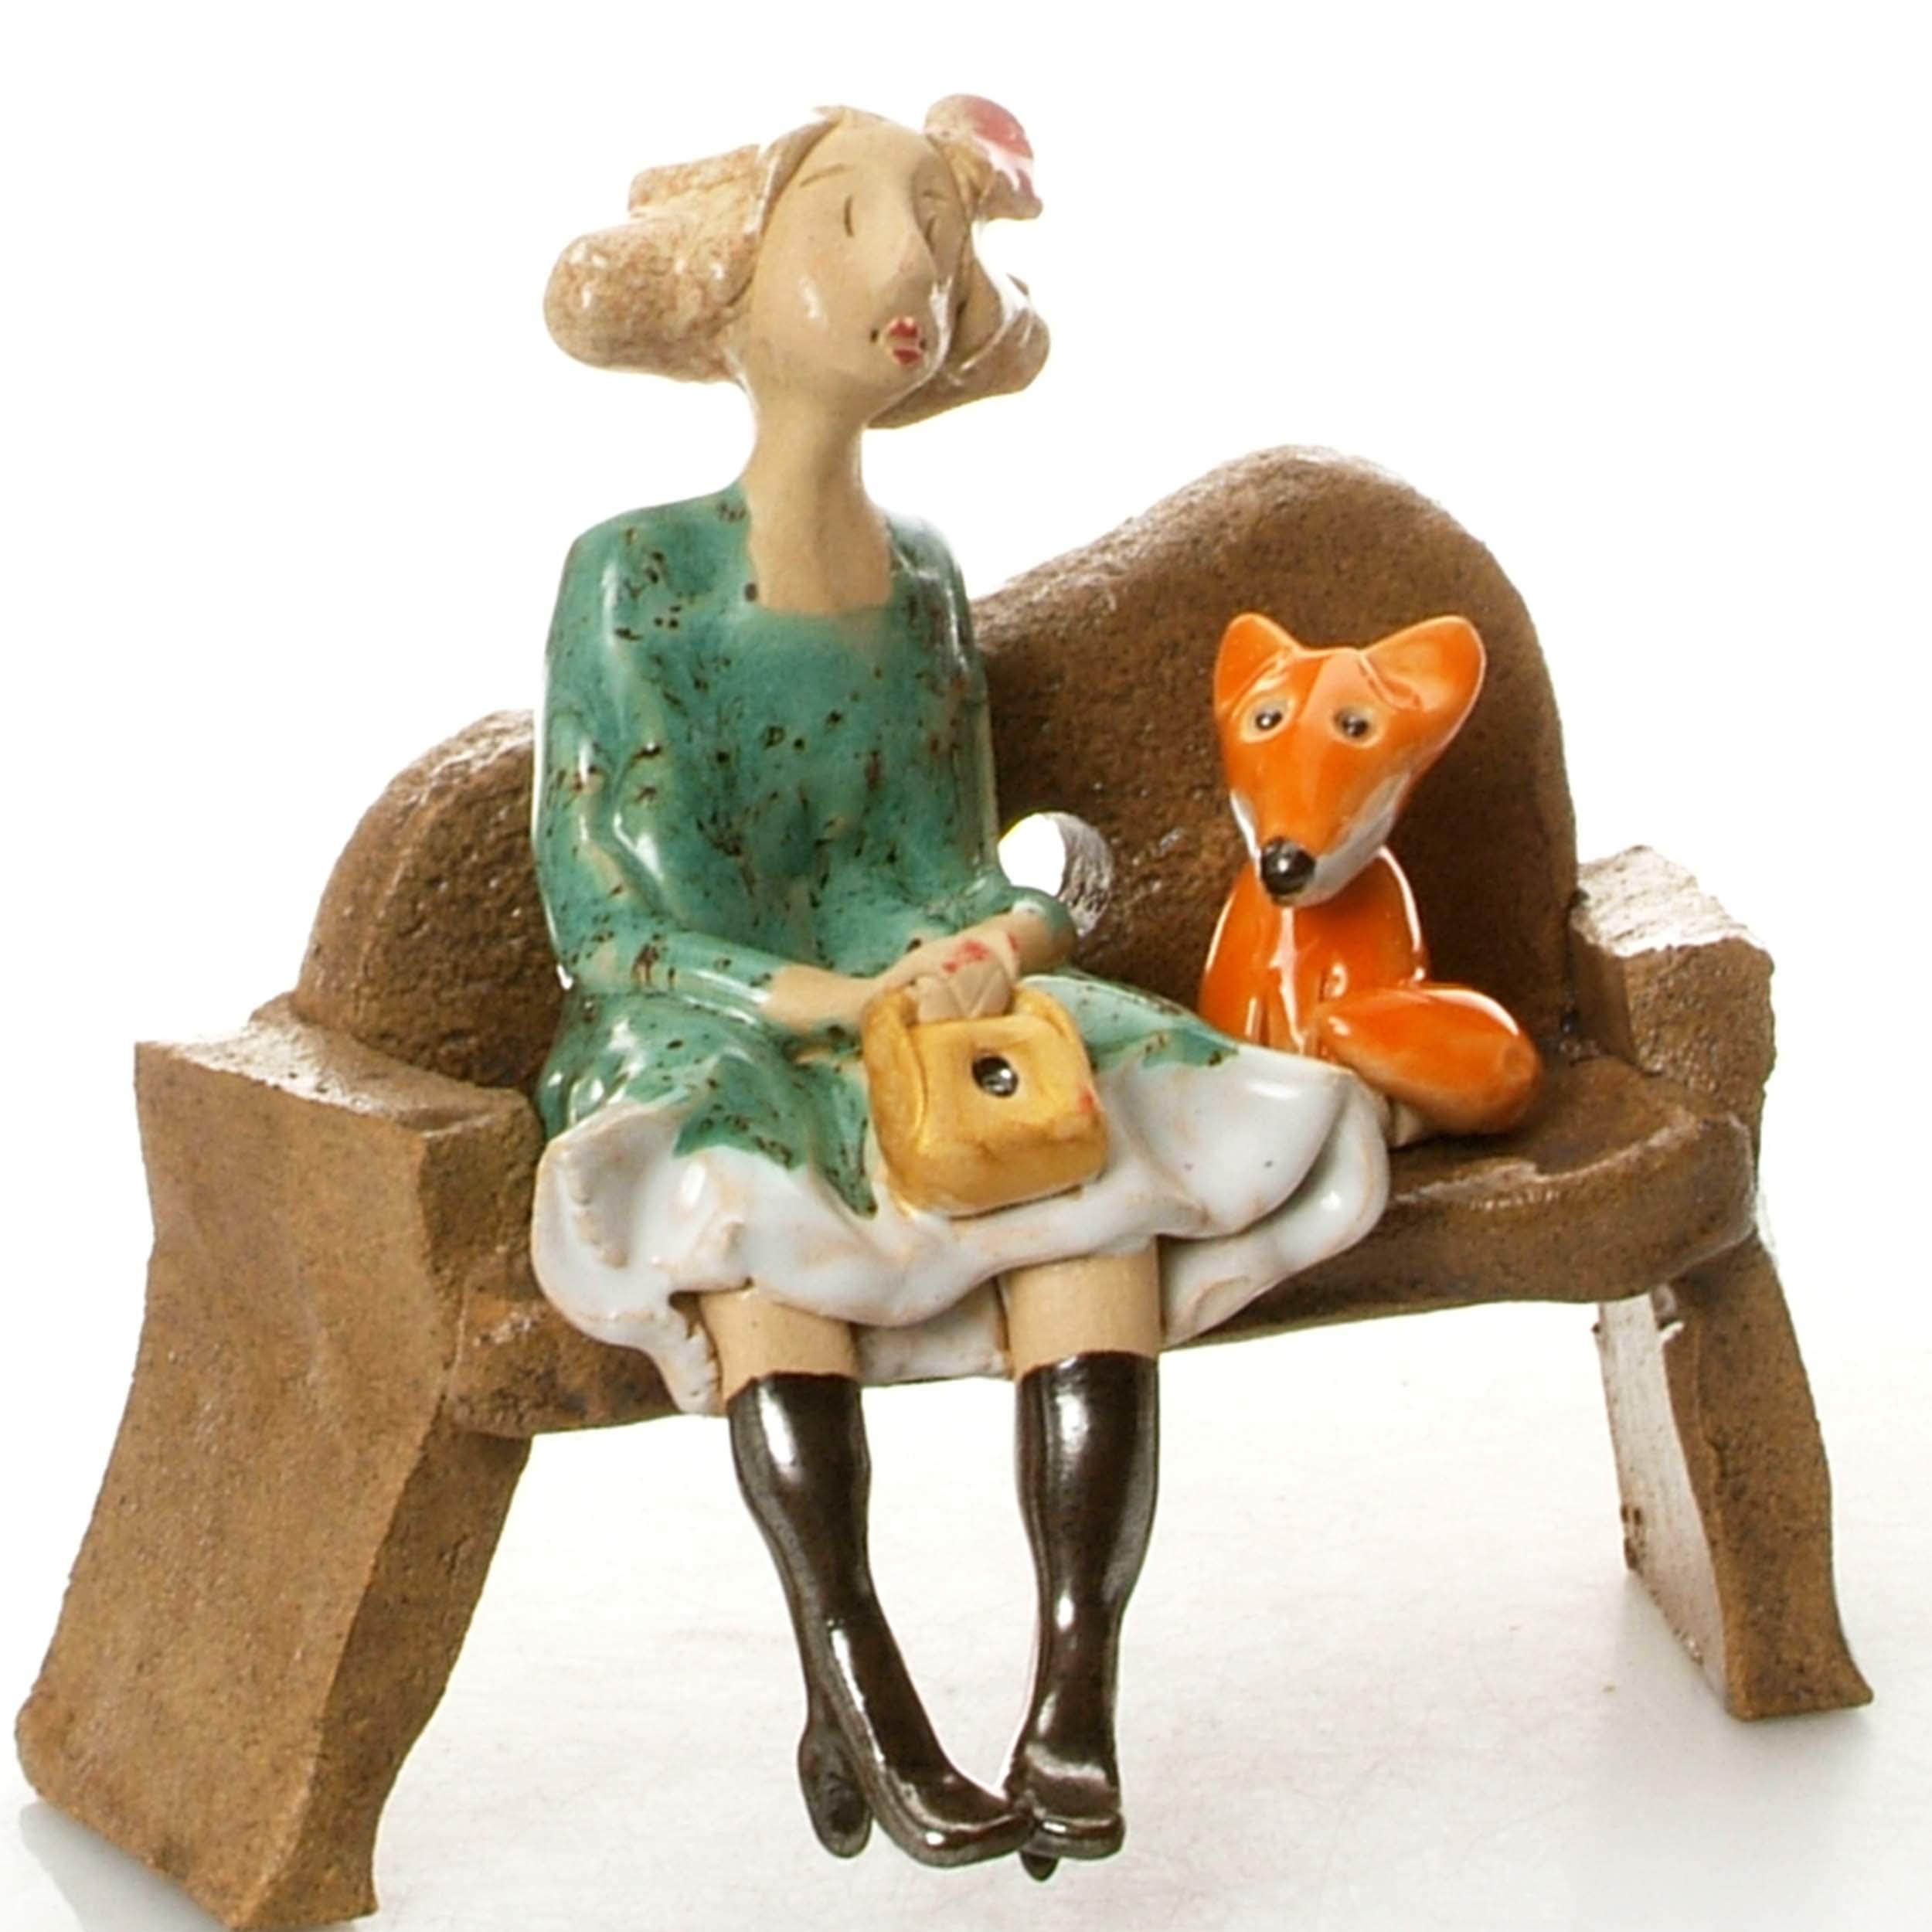 Ceramic Foxy Lady Figurine sitting on Bench with Fox